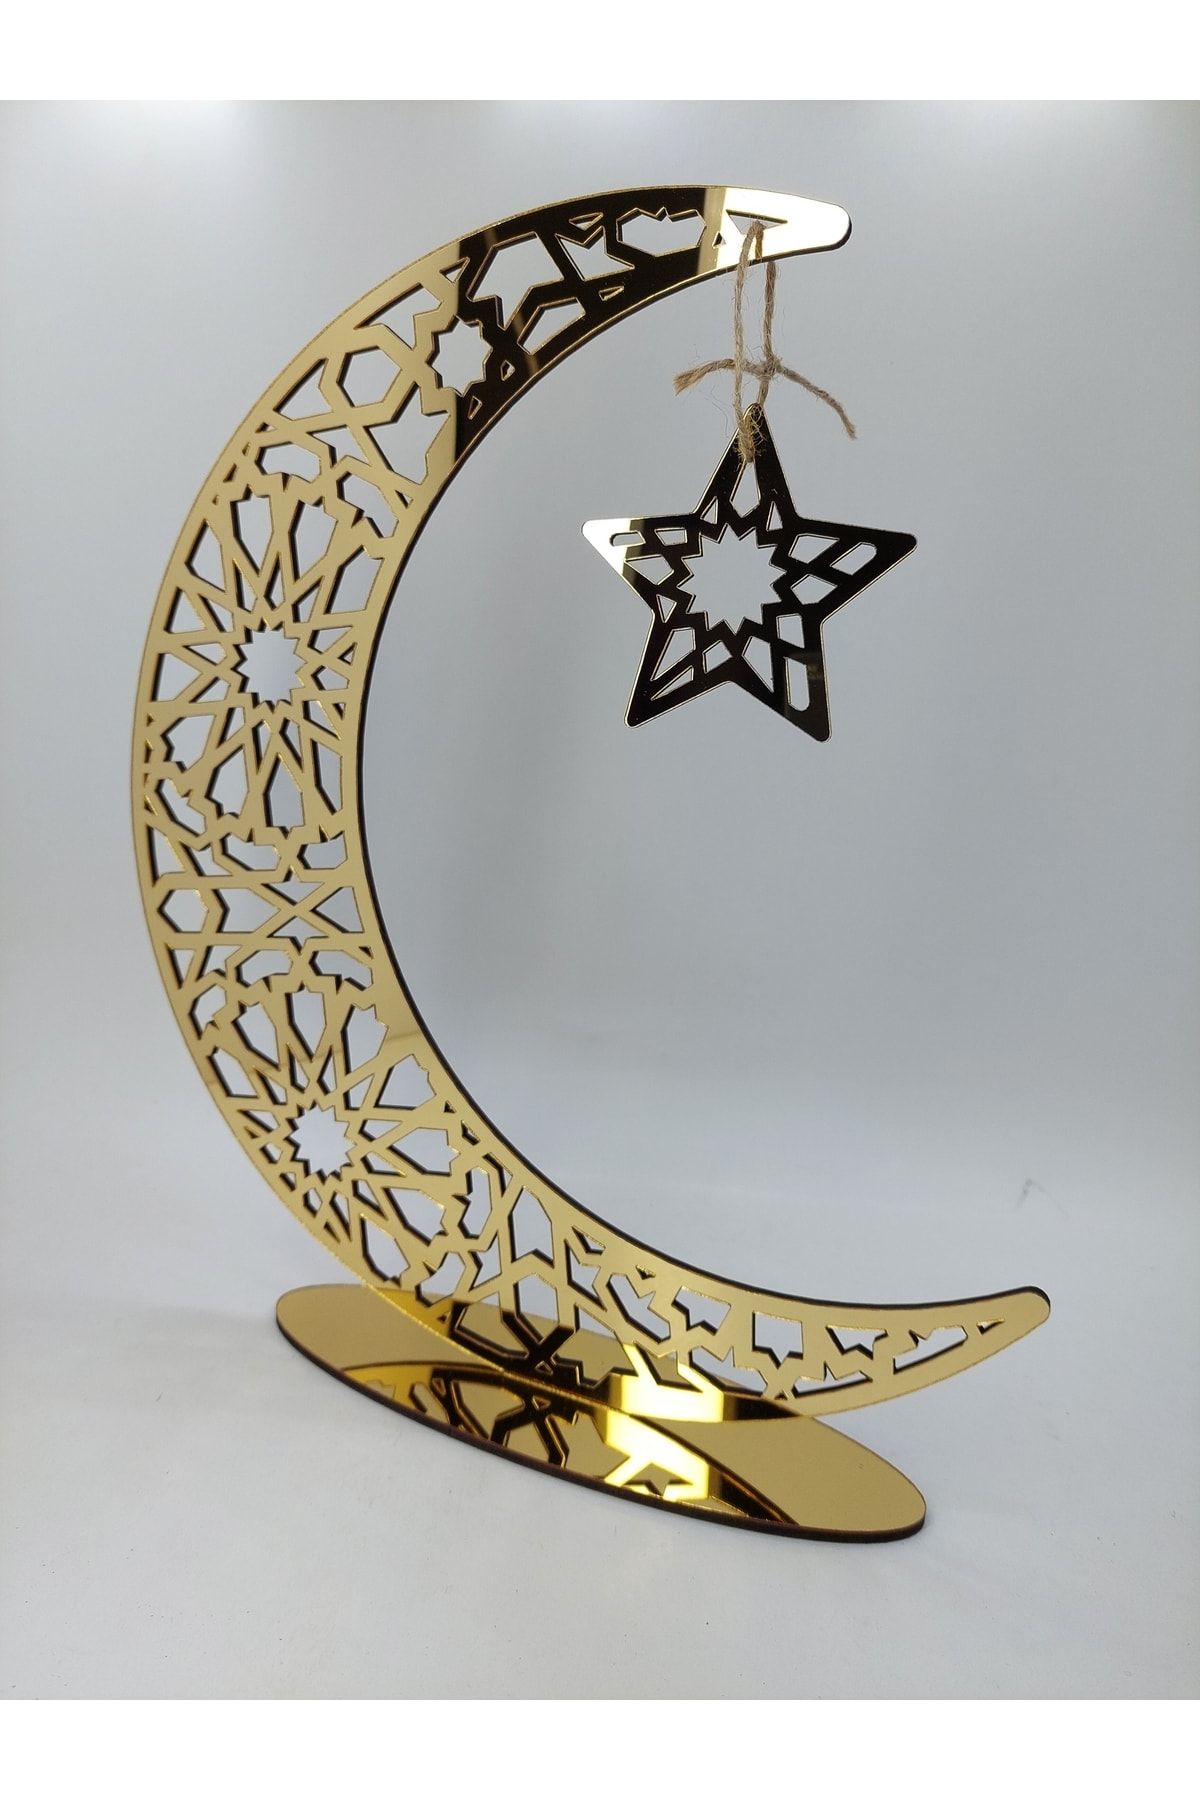 şamaksesuar Ramazan'a Özel Ahşap Altın Pleksi Süsleme Ve Dekoratif Hilal